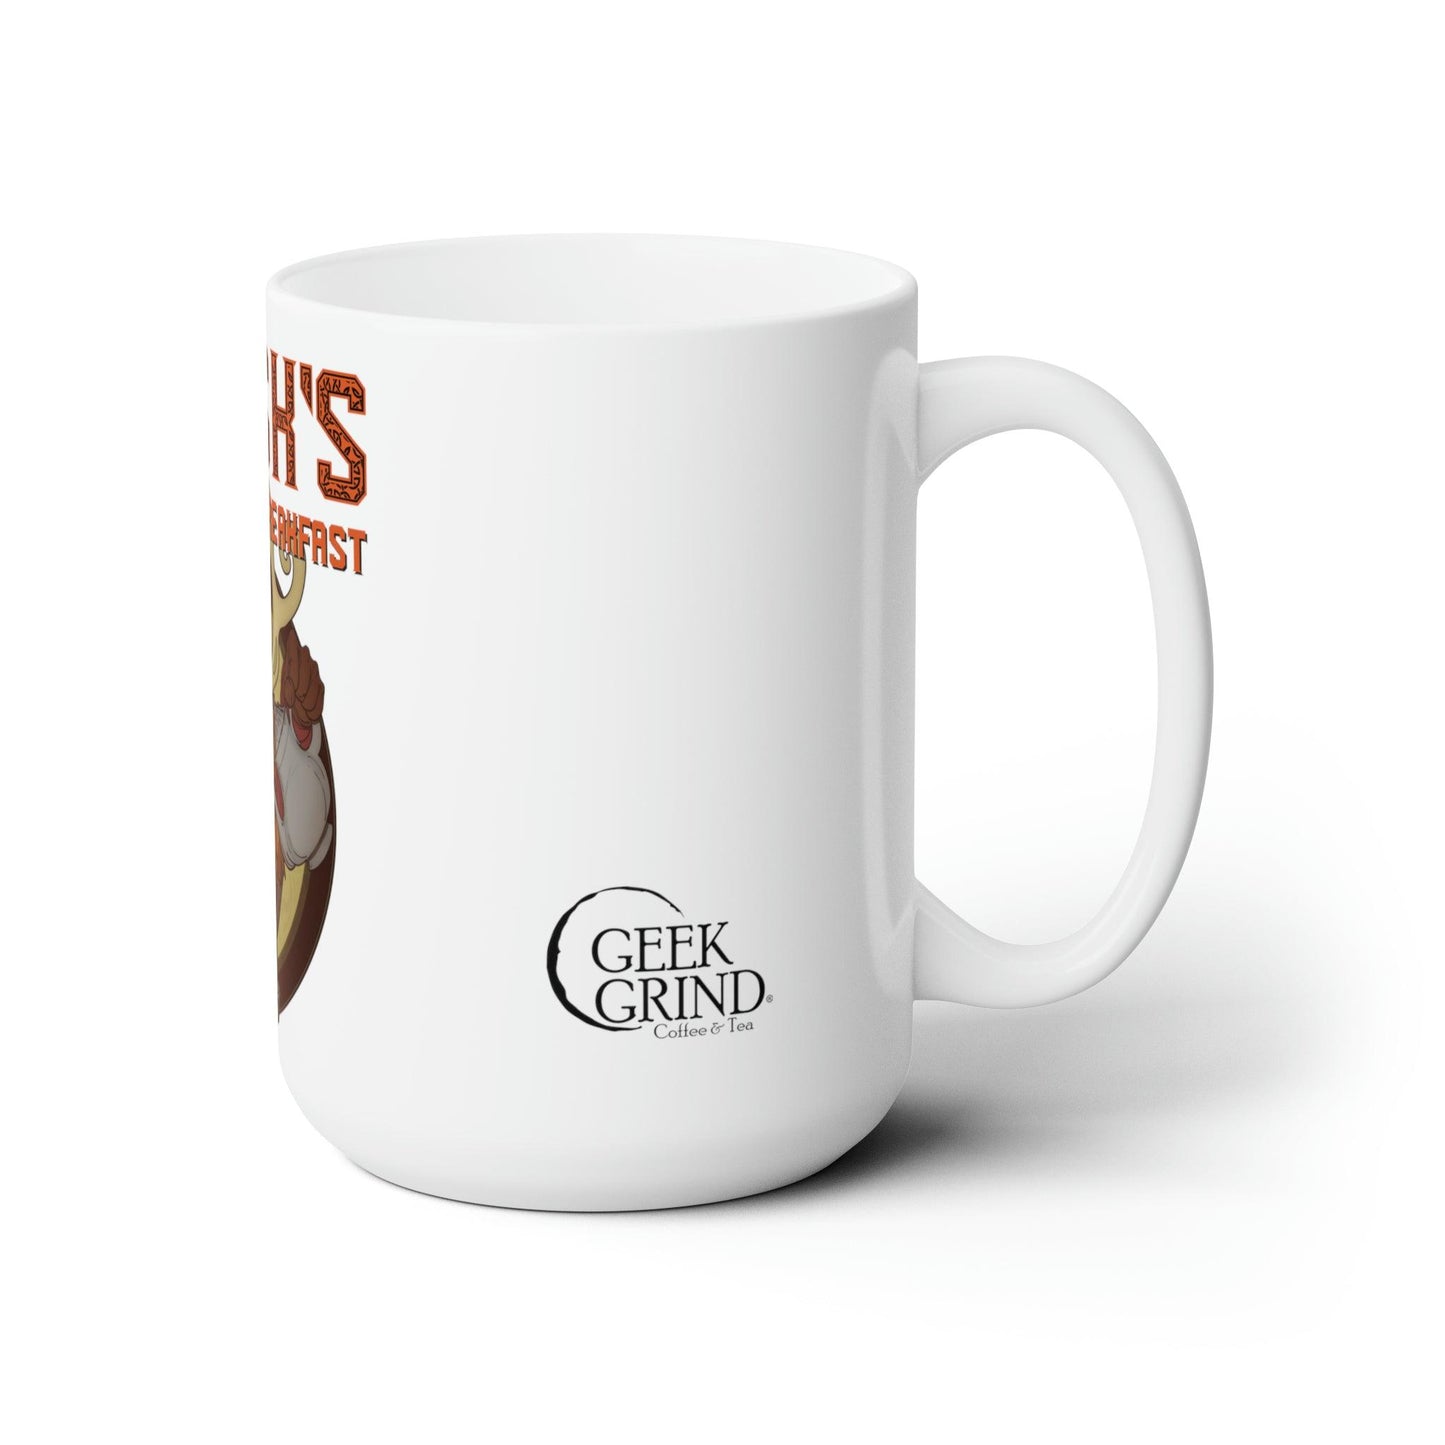 Harsk - Pathfinder Mug - Geek Grind Coffee